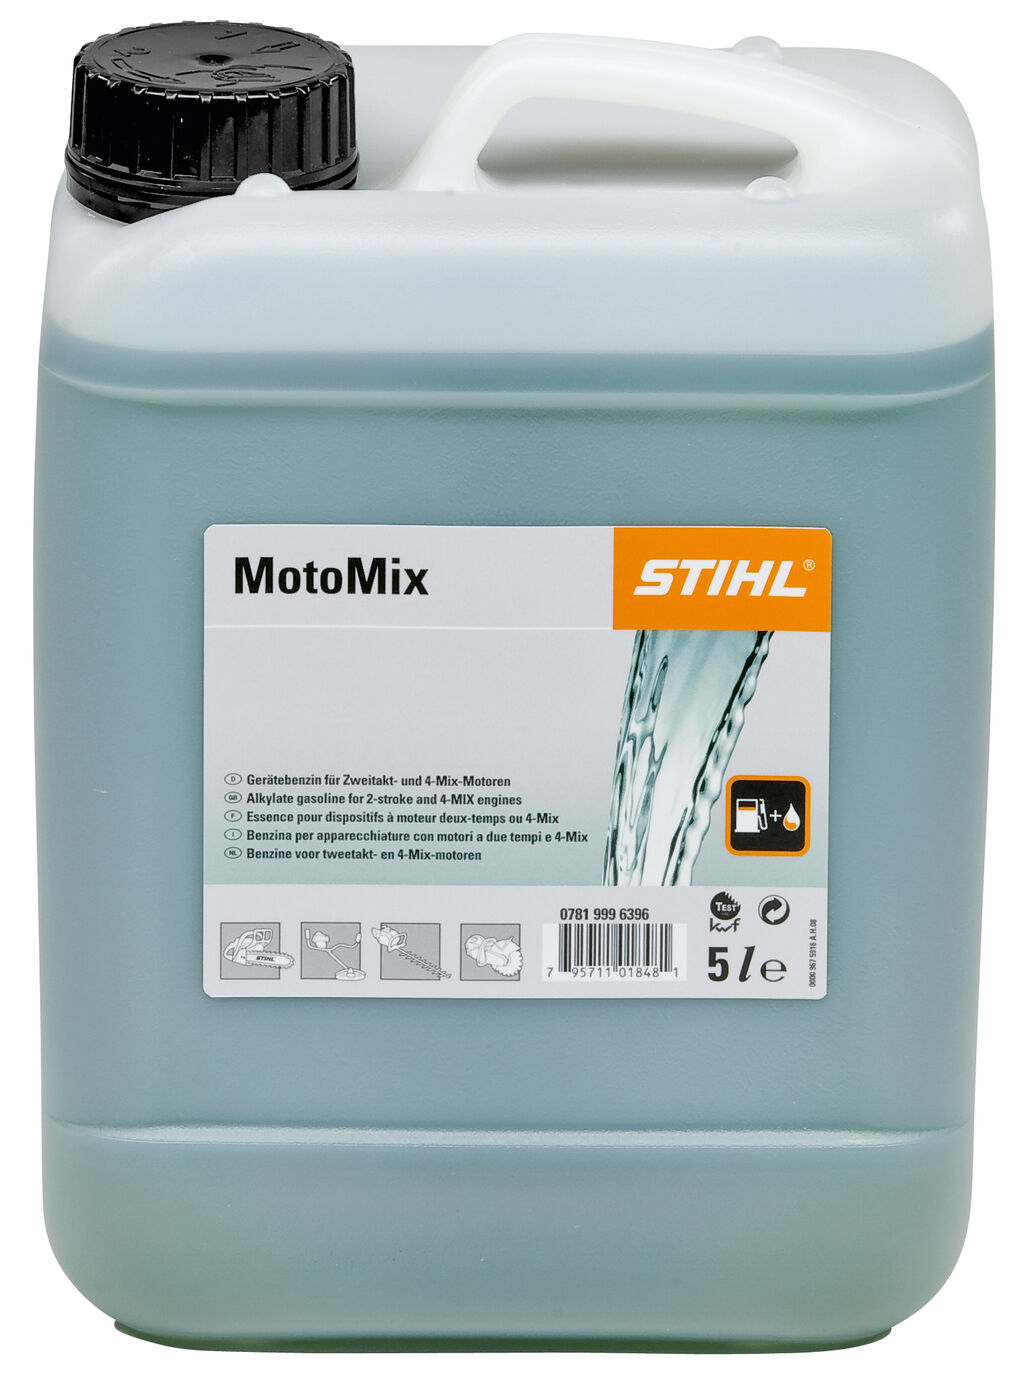 STIHL MotoMix 5 Liter für Zweitakt- und 4-Mix-Motoren Kraftstoffgemisch